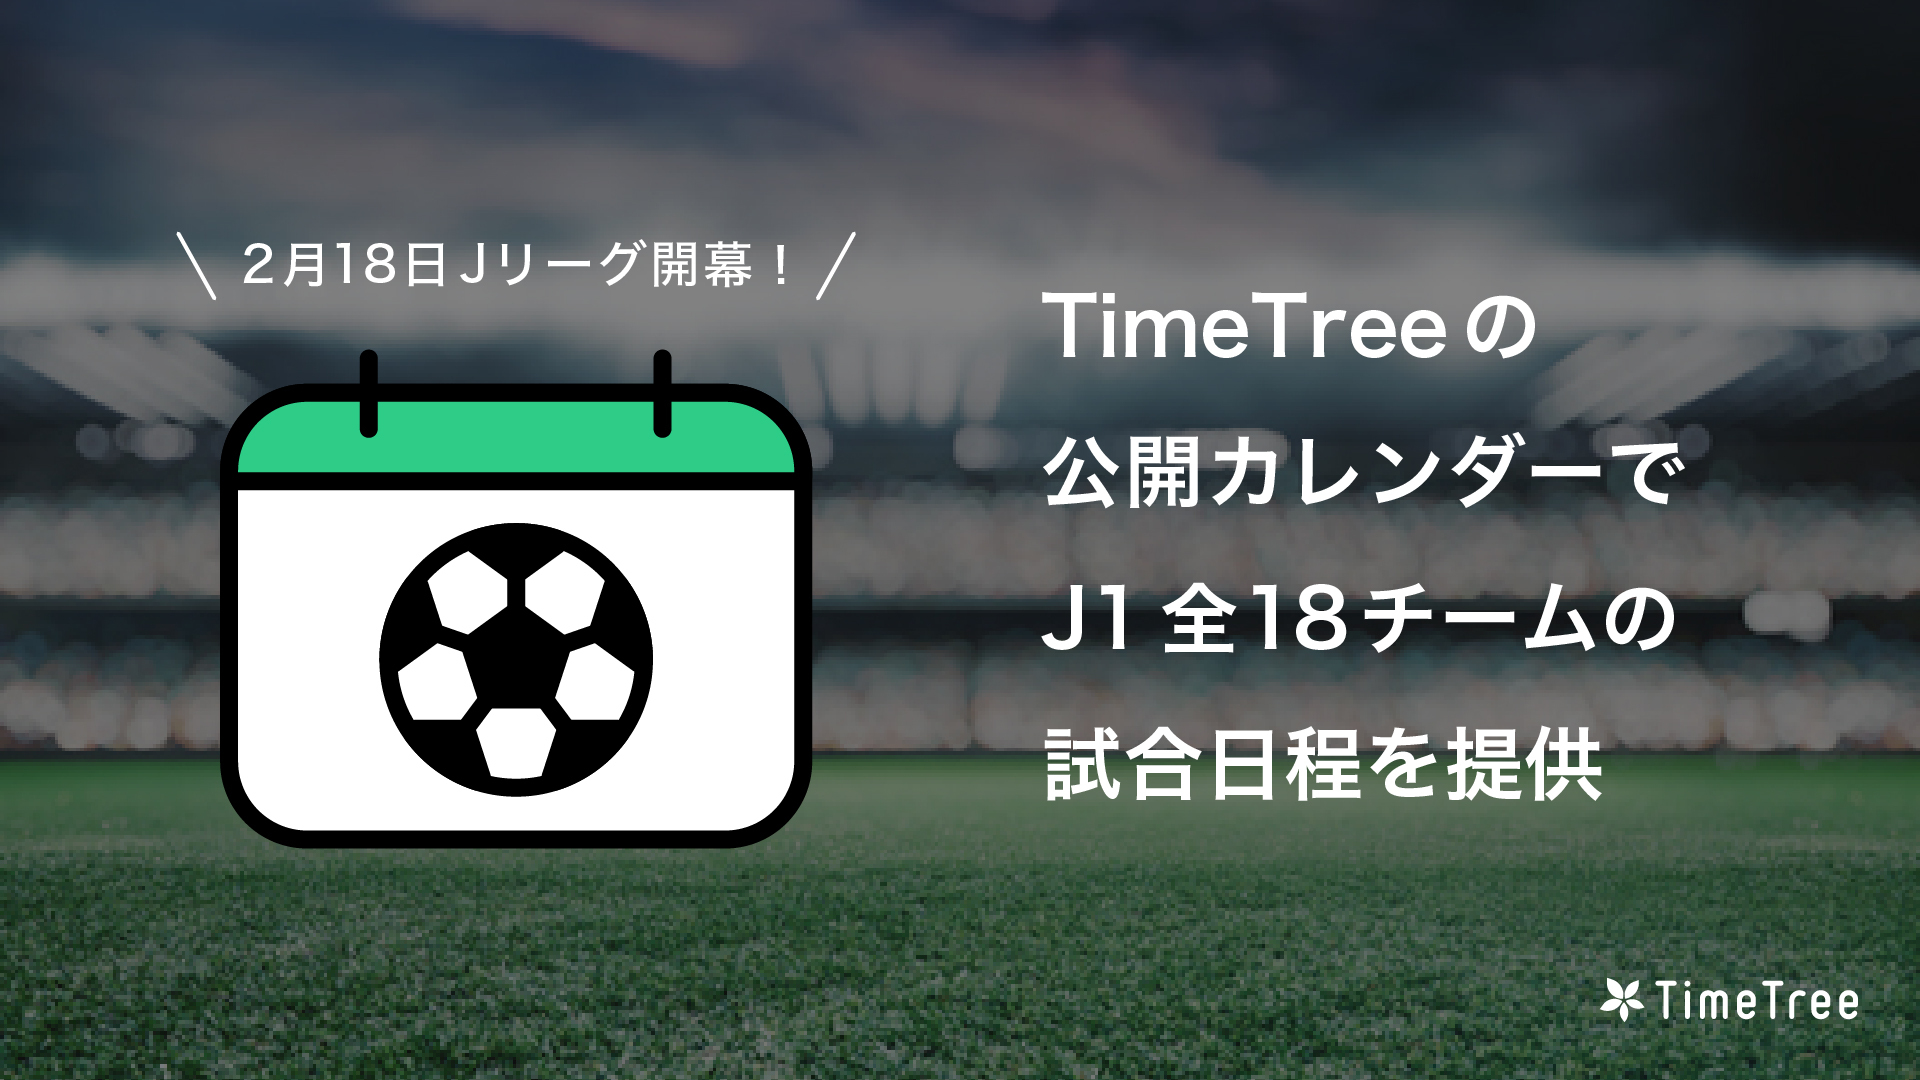 2月18日 Jリーグ開幕 Timetree 公開カレンダーで J1全18チームの試合日程を提供 株式会社timetreeのプレスリリース